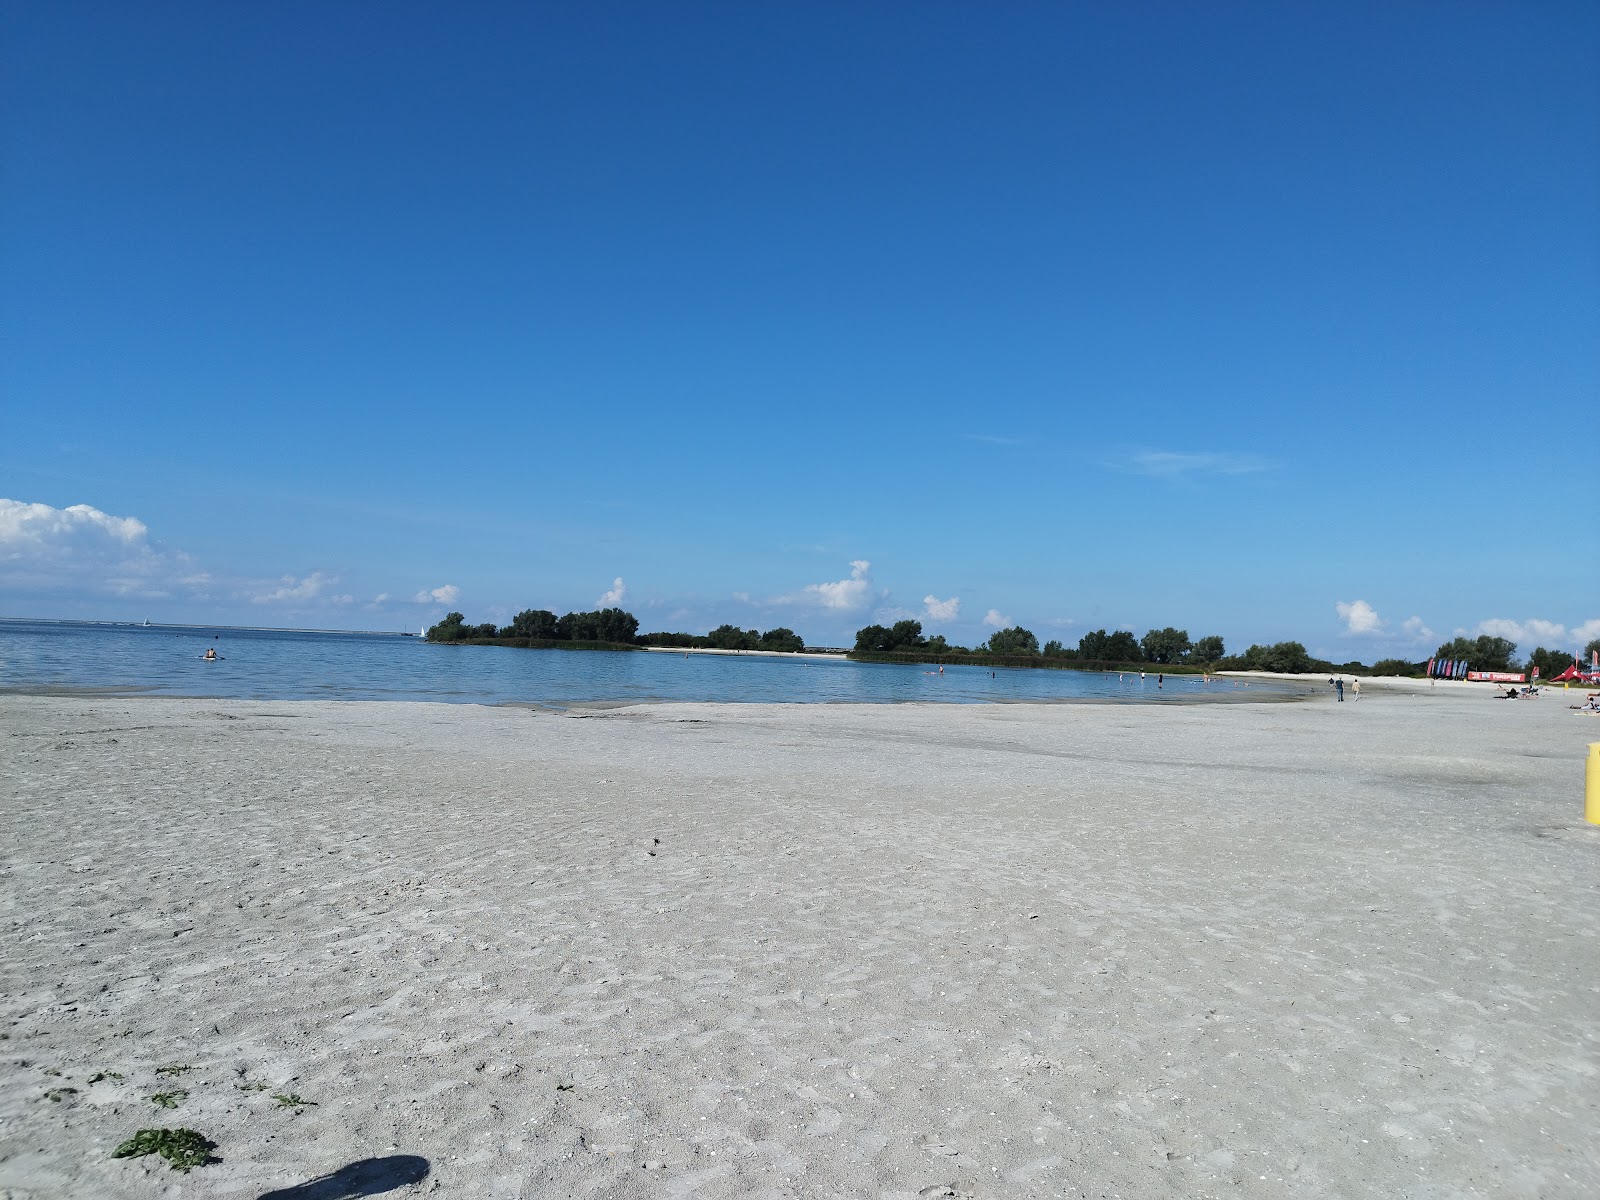 Foto af Makkum strand - populært sted blandt afslapningskendere